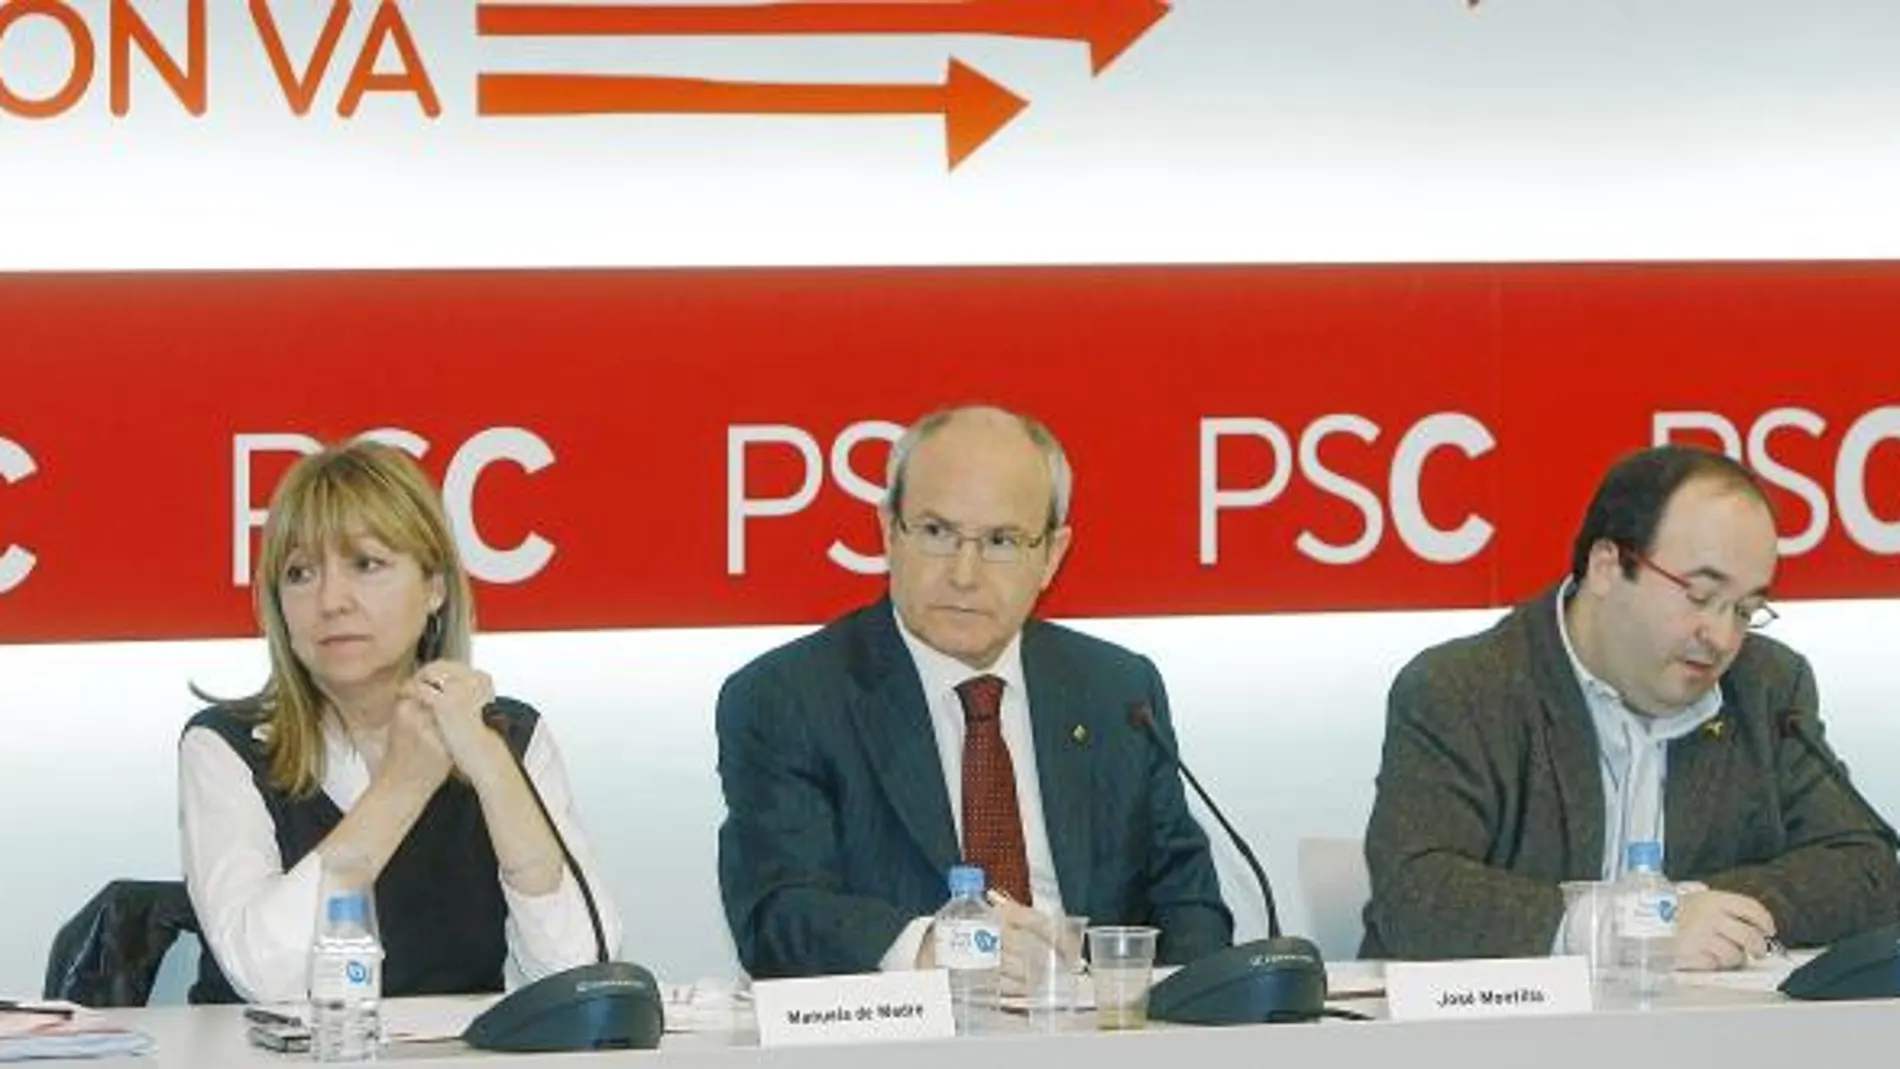 El PSC rompe su alianza electoral con la plataforma maragallista CpC